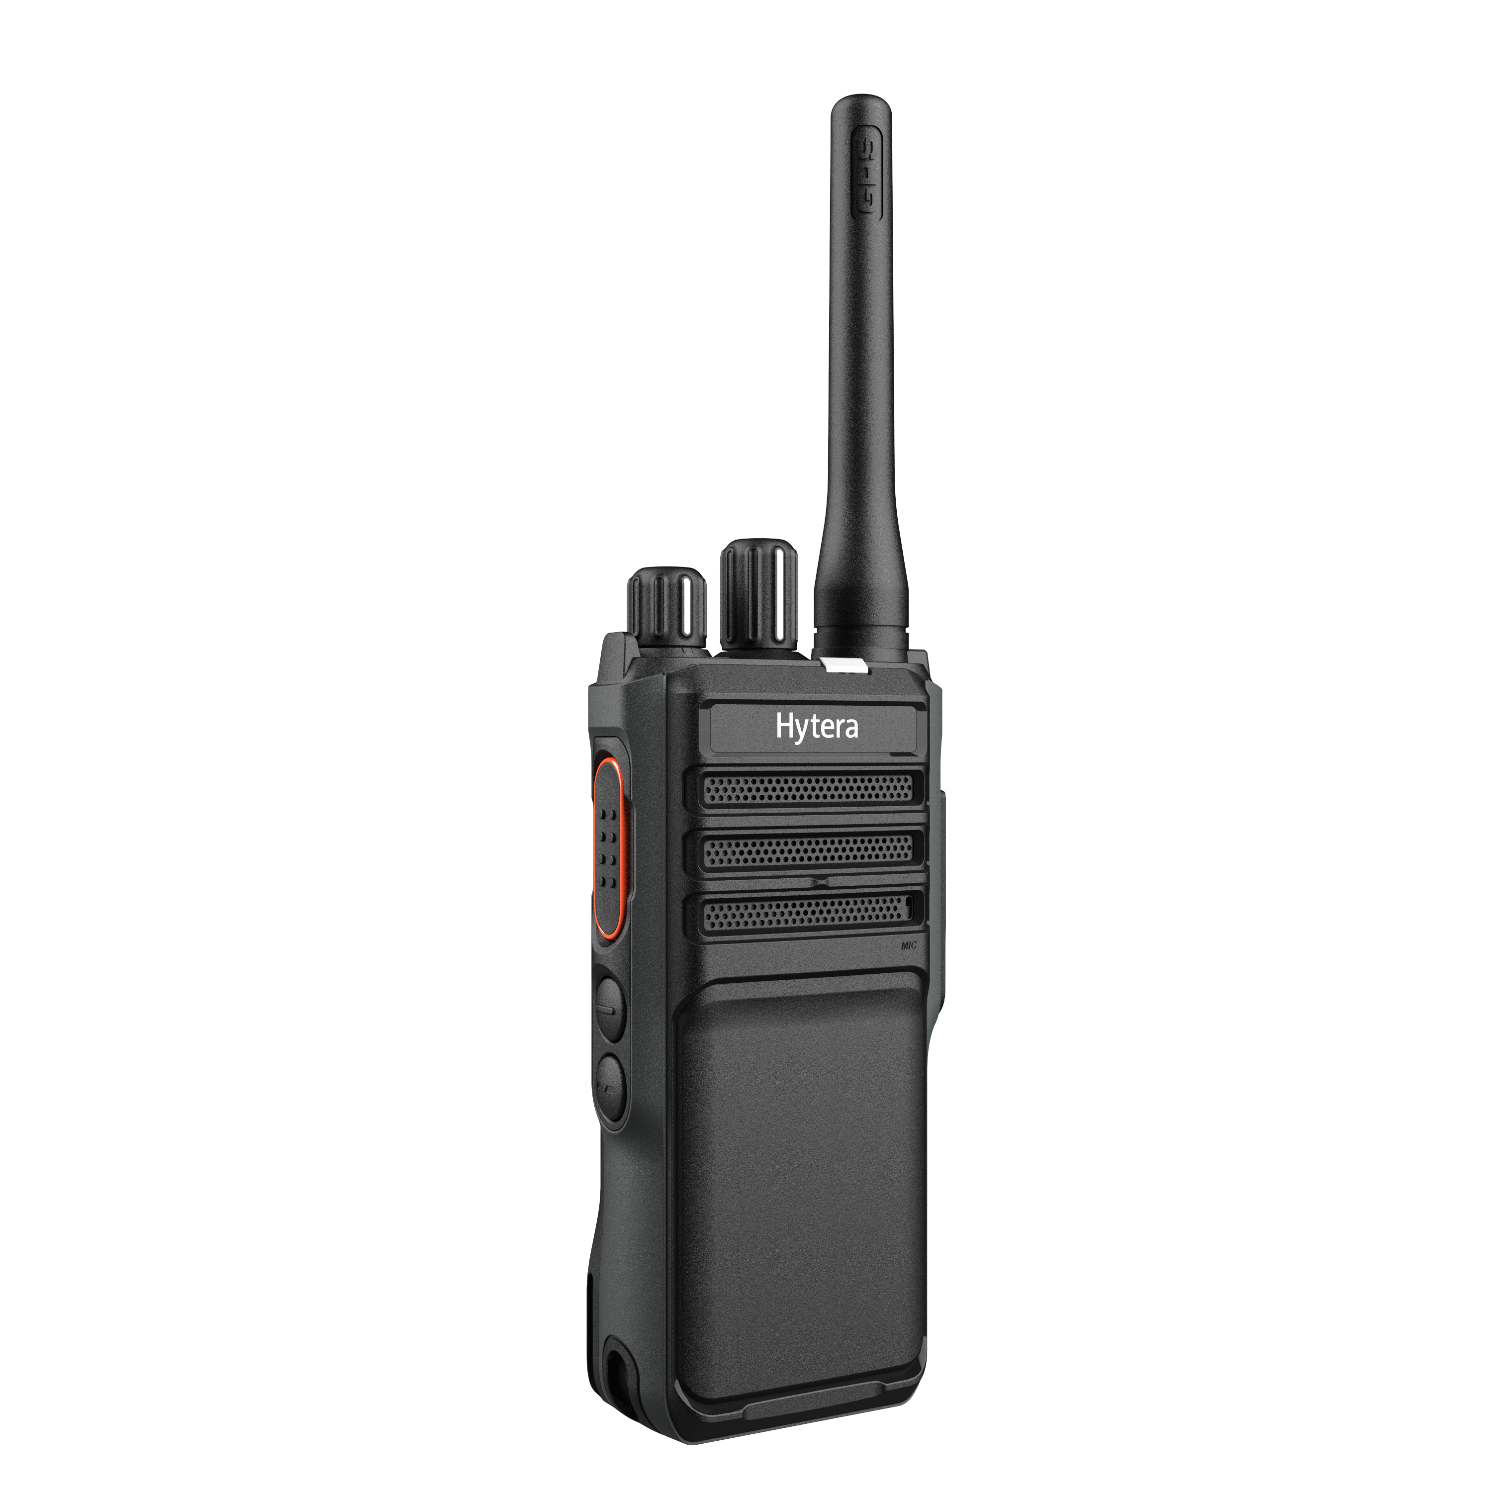 Новинка от Hytera — профессиональные портативные радиостанции нового поколения HP505 и HP565